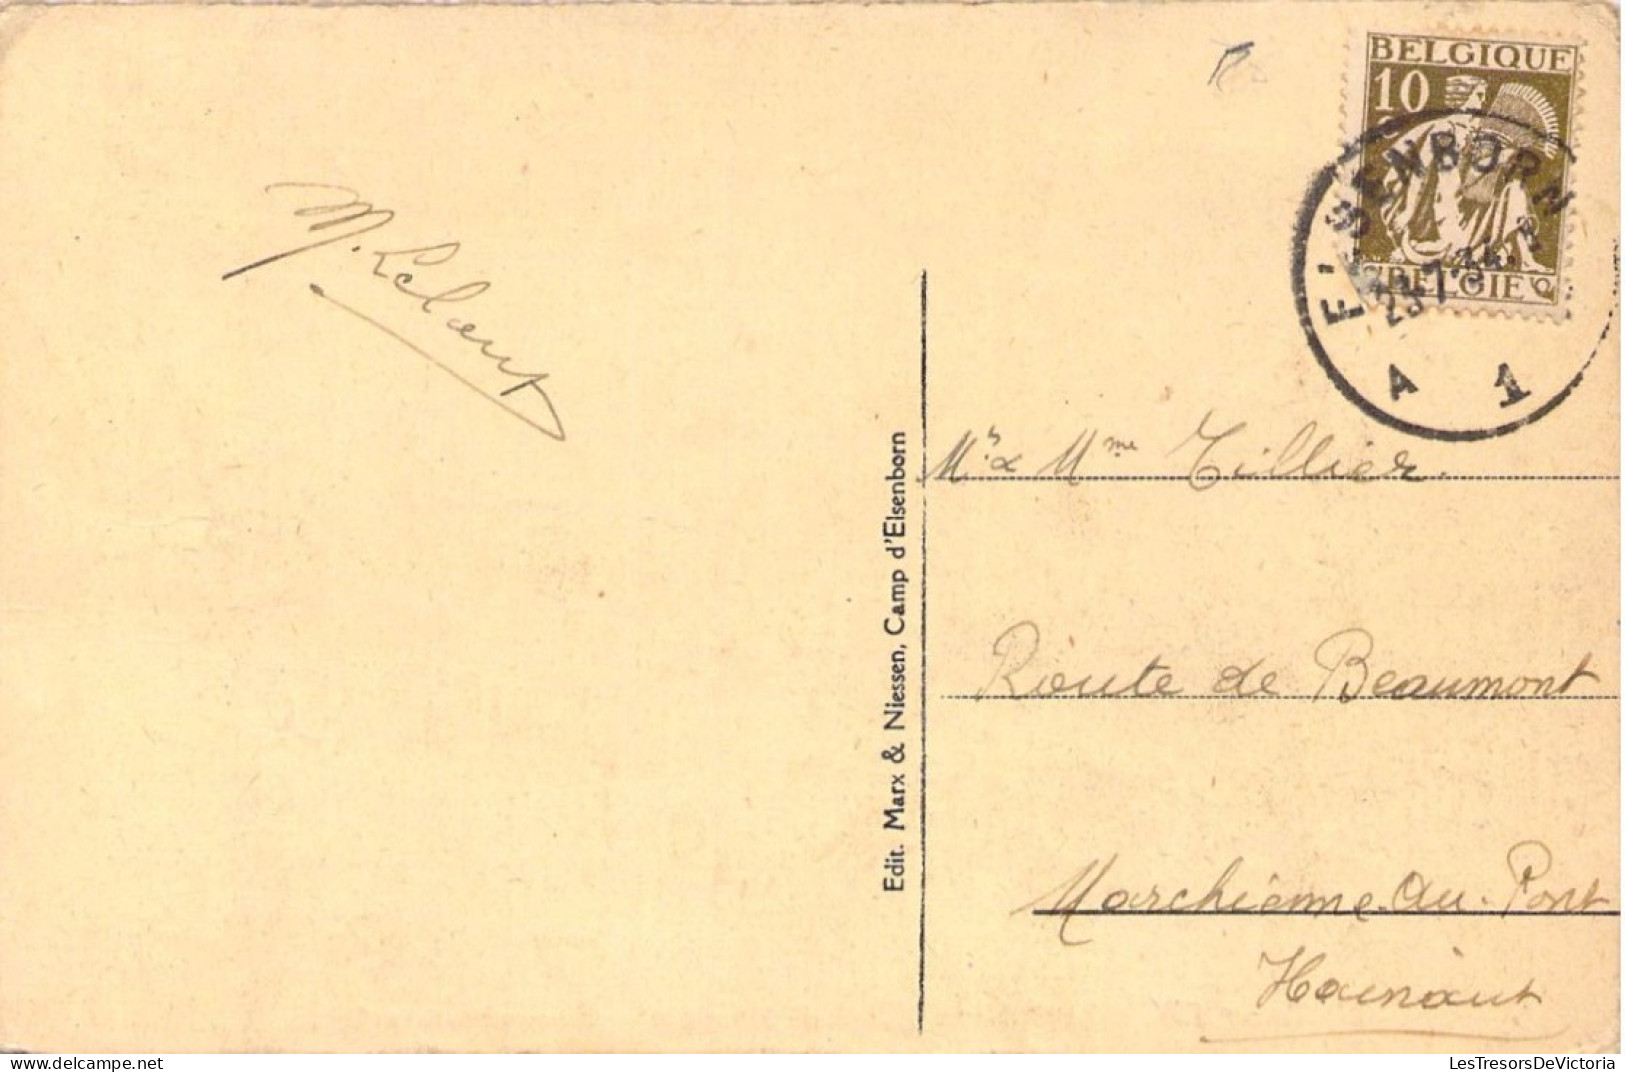 BELGIQUE - ELSENBORN Camp - Centrale électrique - Carte Postale Ancienne - Elsenborn (camp)